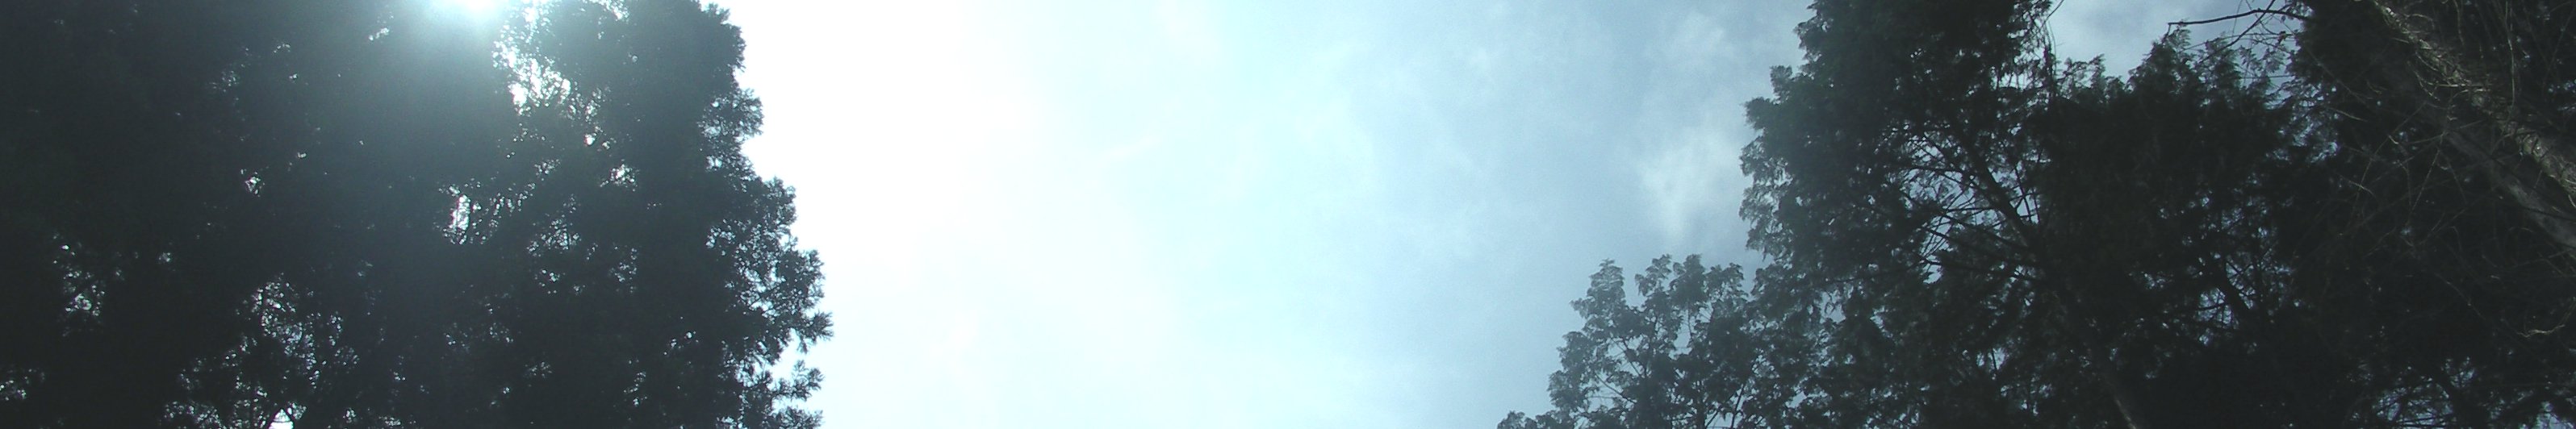 国民年金(写真:東白川村の風景&lt;ひのきに降り注ぐ陽の光&gt;)